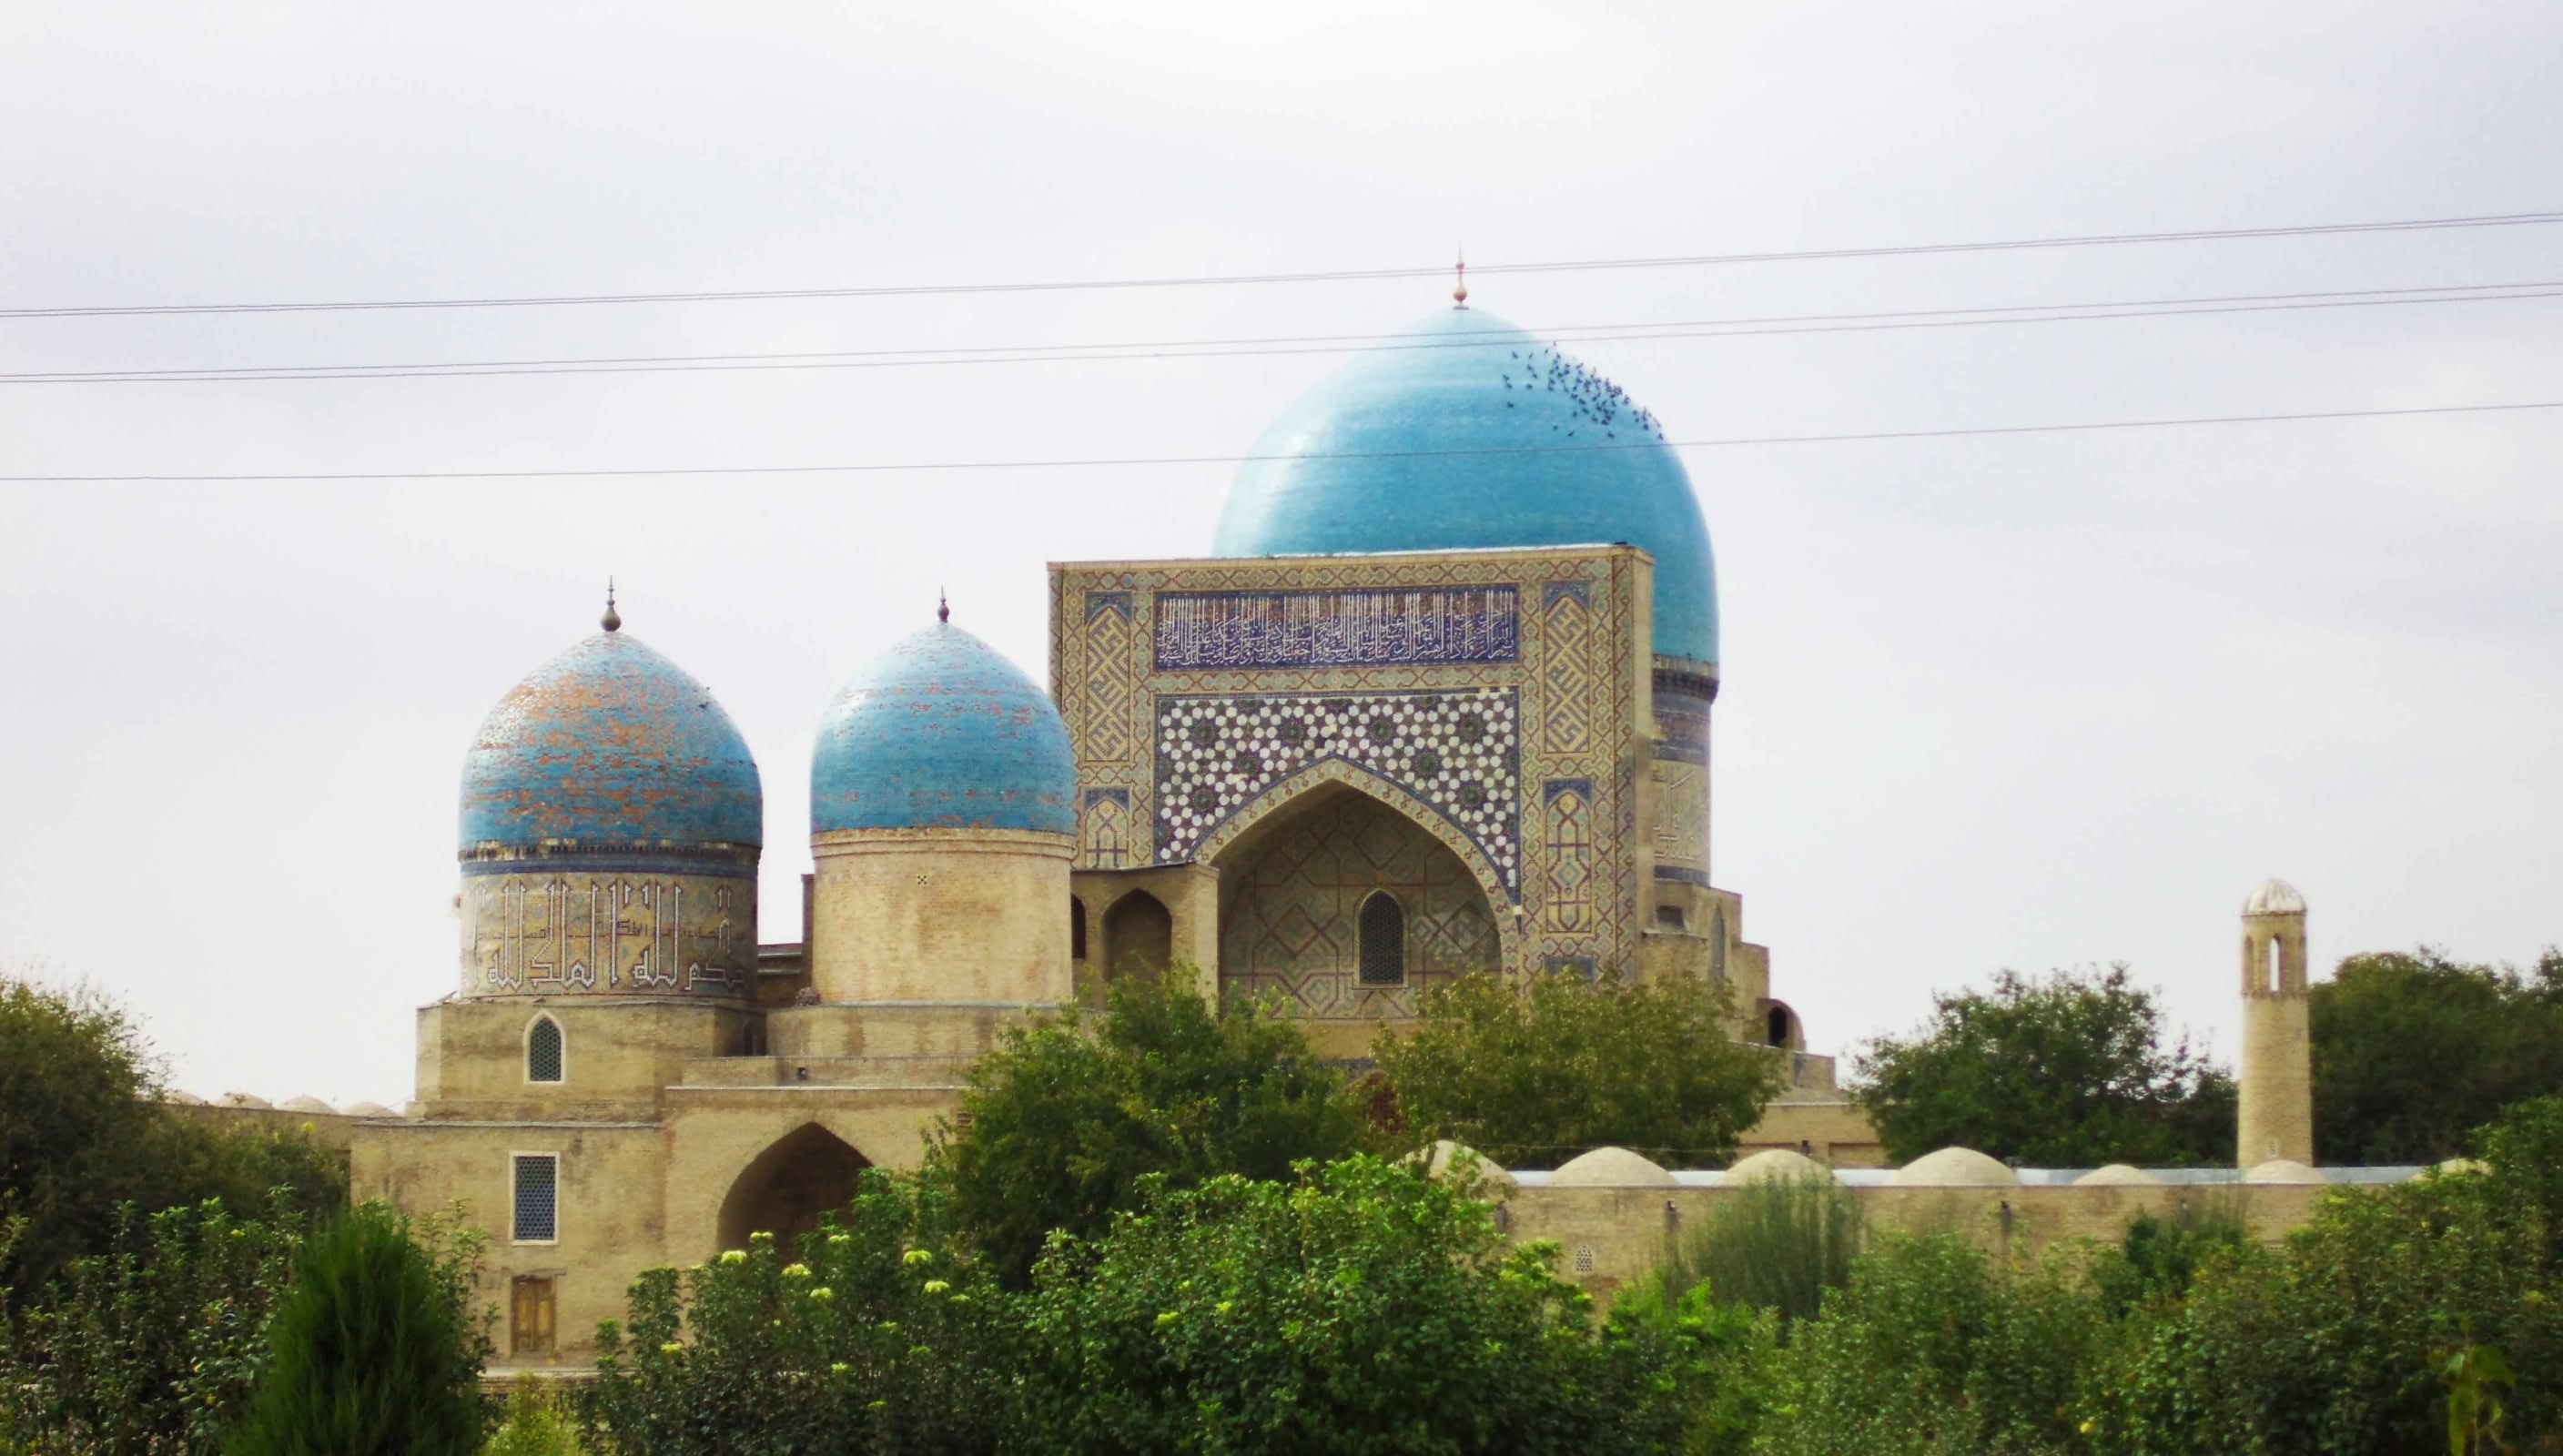 The Bibi Khanym Mosque In Uzbekistan